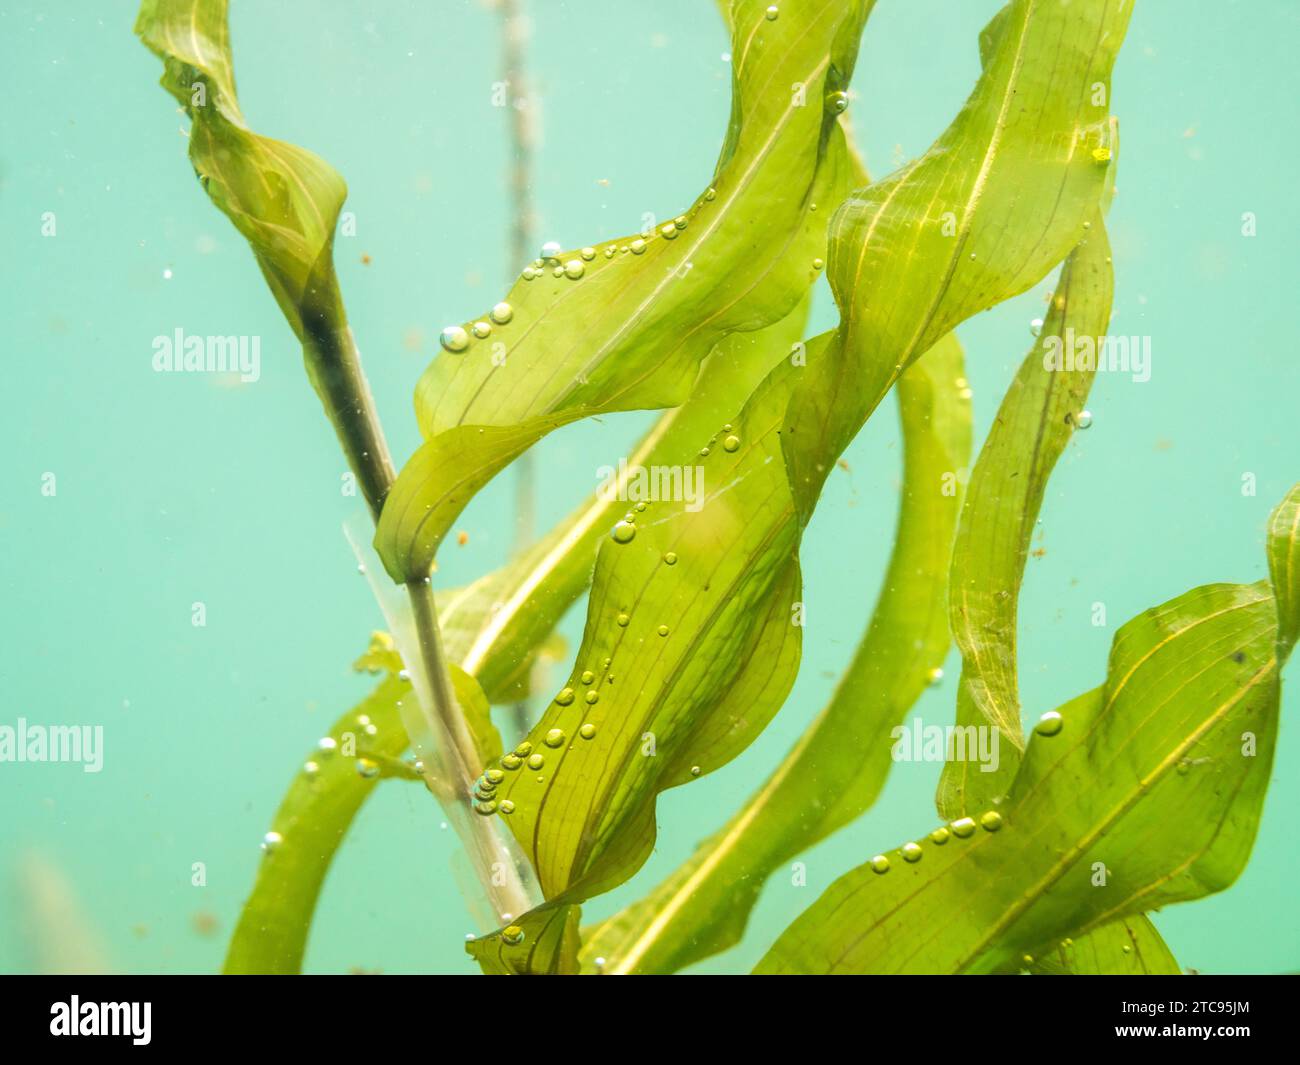 Submerged leaves of Potamogeton praelongus aquatic plant Stock Photo